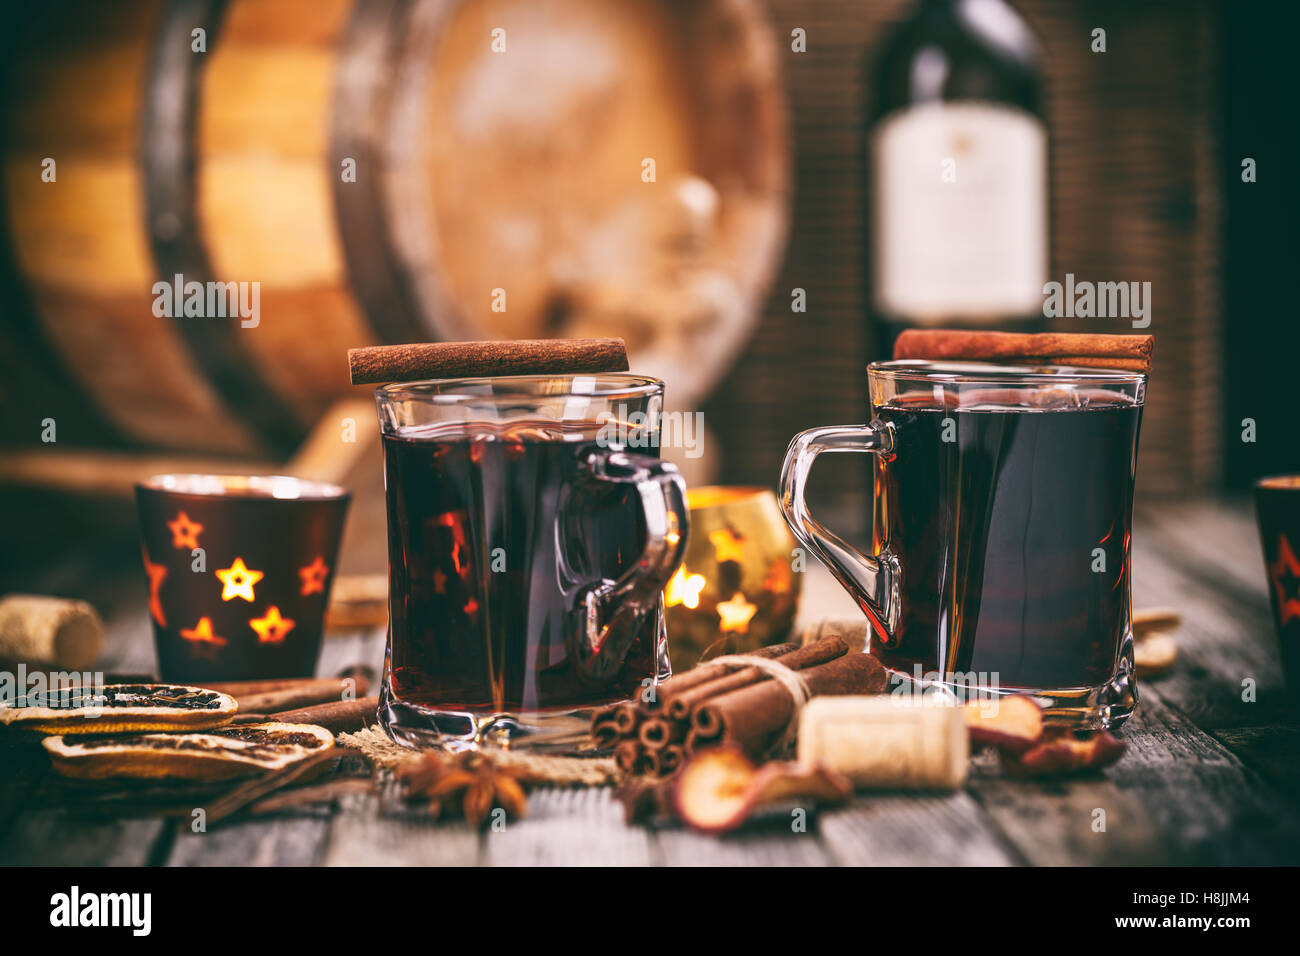 Vin chaud de Noël aux épices sur fond de bois Banque D'Images